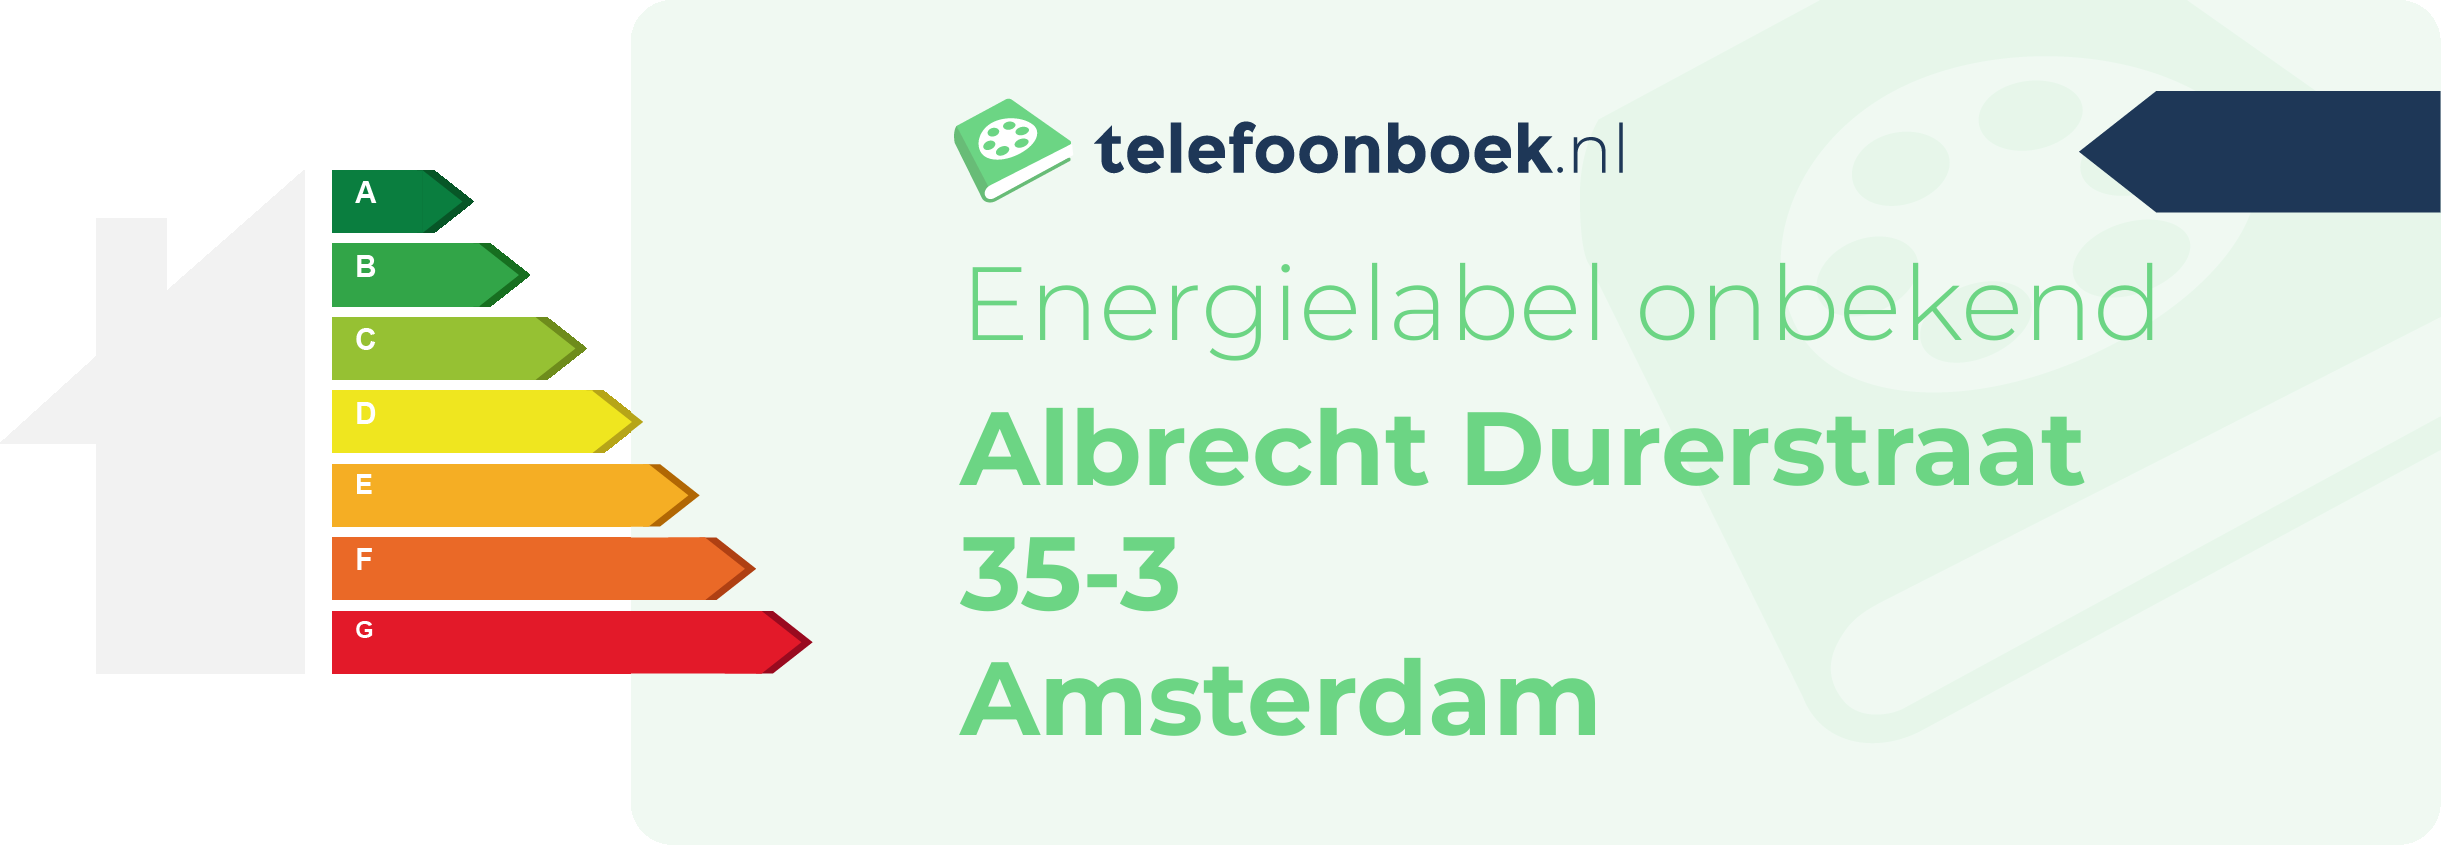 Energielabel Albrecht Durerstraat 35-3 Amsterdam